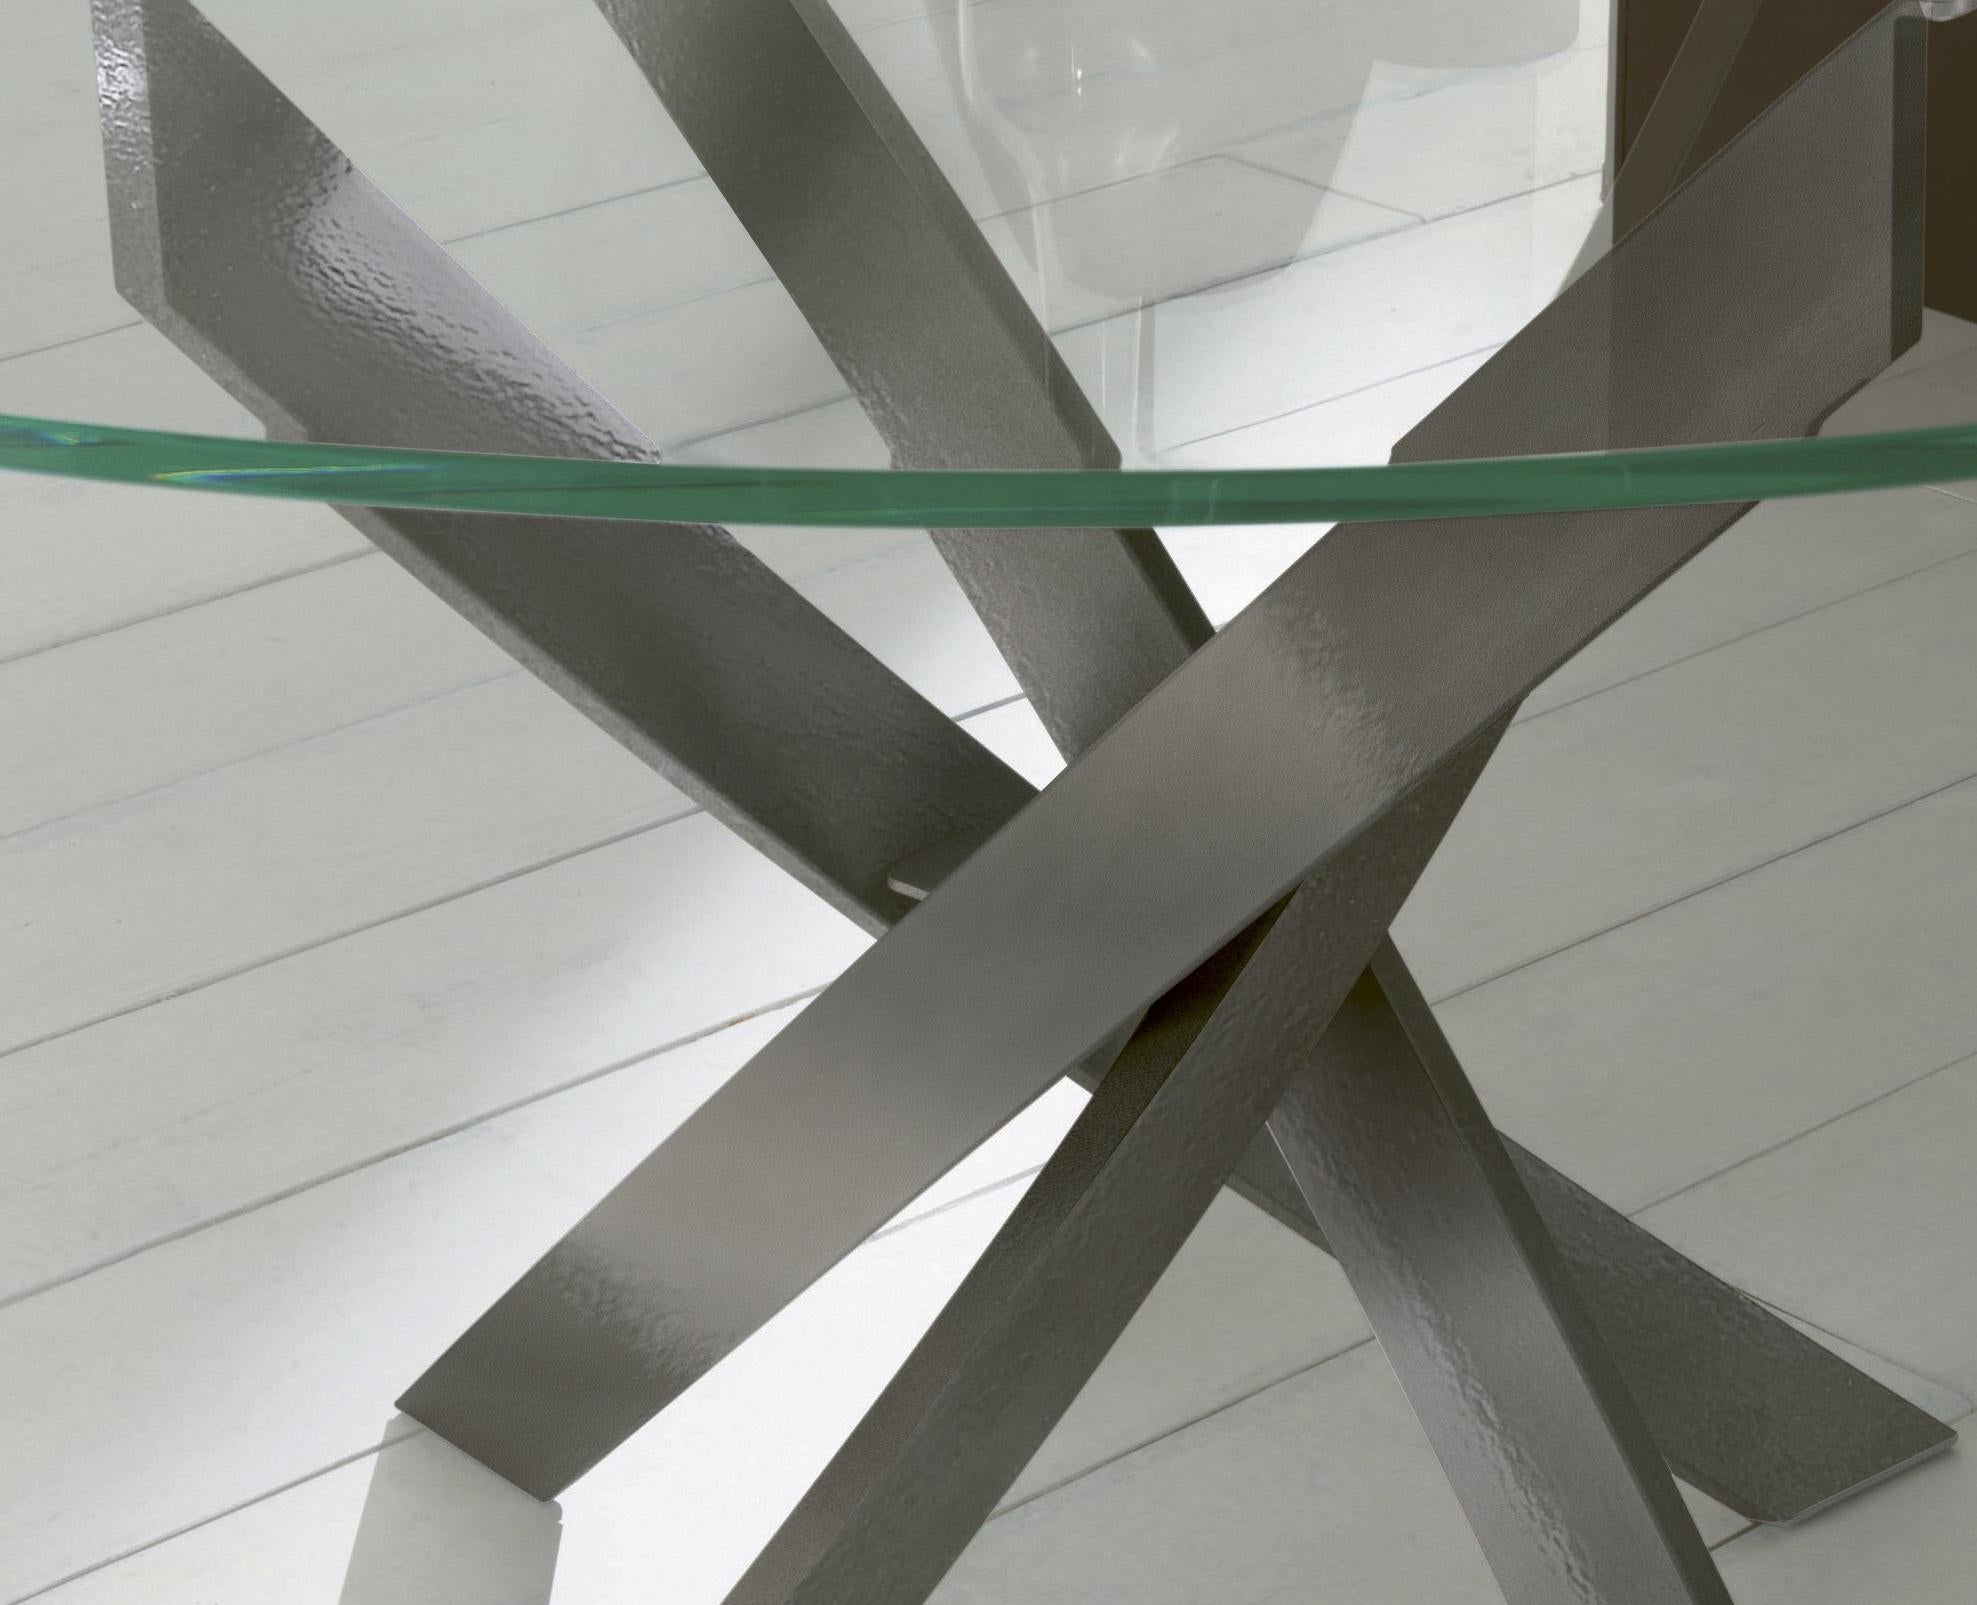 Dieser von Pocci&Dondoli entworfene Tisch zeichnet sich durch eine harmonische Drehung der geschwungenen Bögen aus, die seine einzigartige Basis umreißen. Das runde Oberteil besteht aus transparentem, extra klarem Glas, das auf einer extra leichten